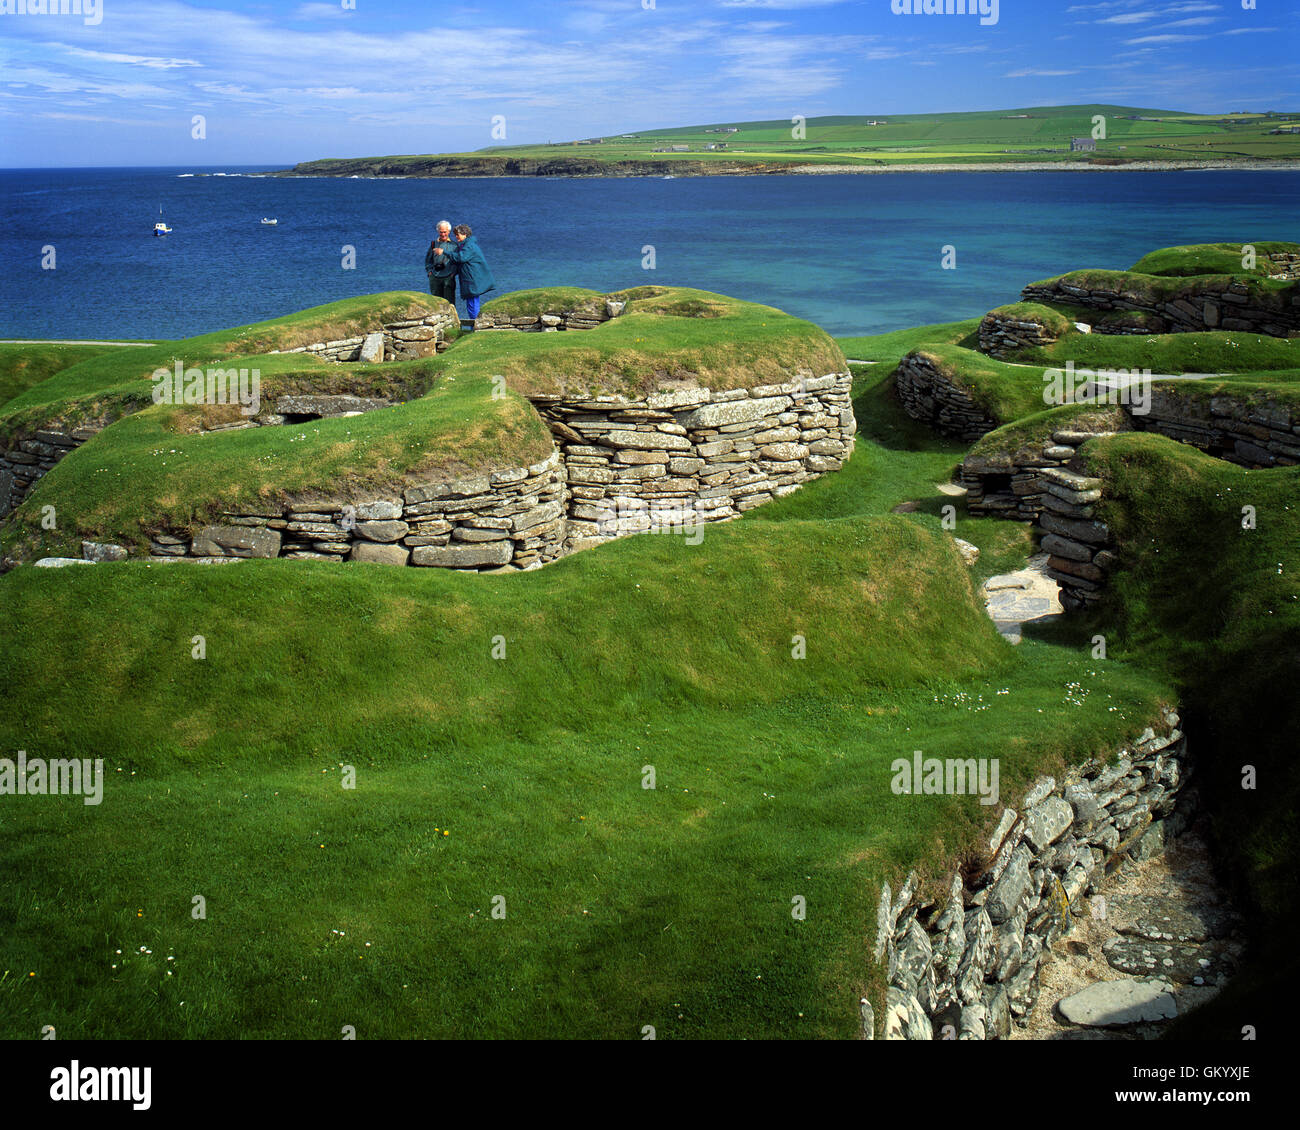 GB - Ecosse : Néolithique Skara Brae sur baie de Skaill sur Orkney Mainland Banque D'Images